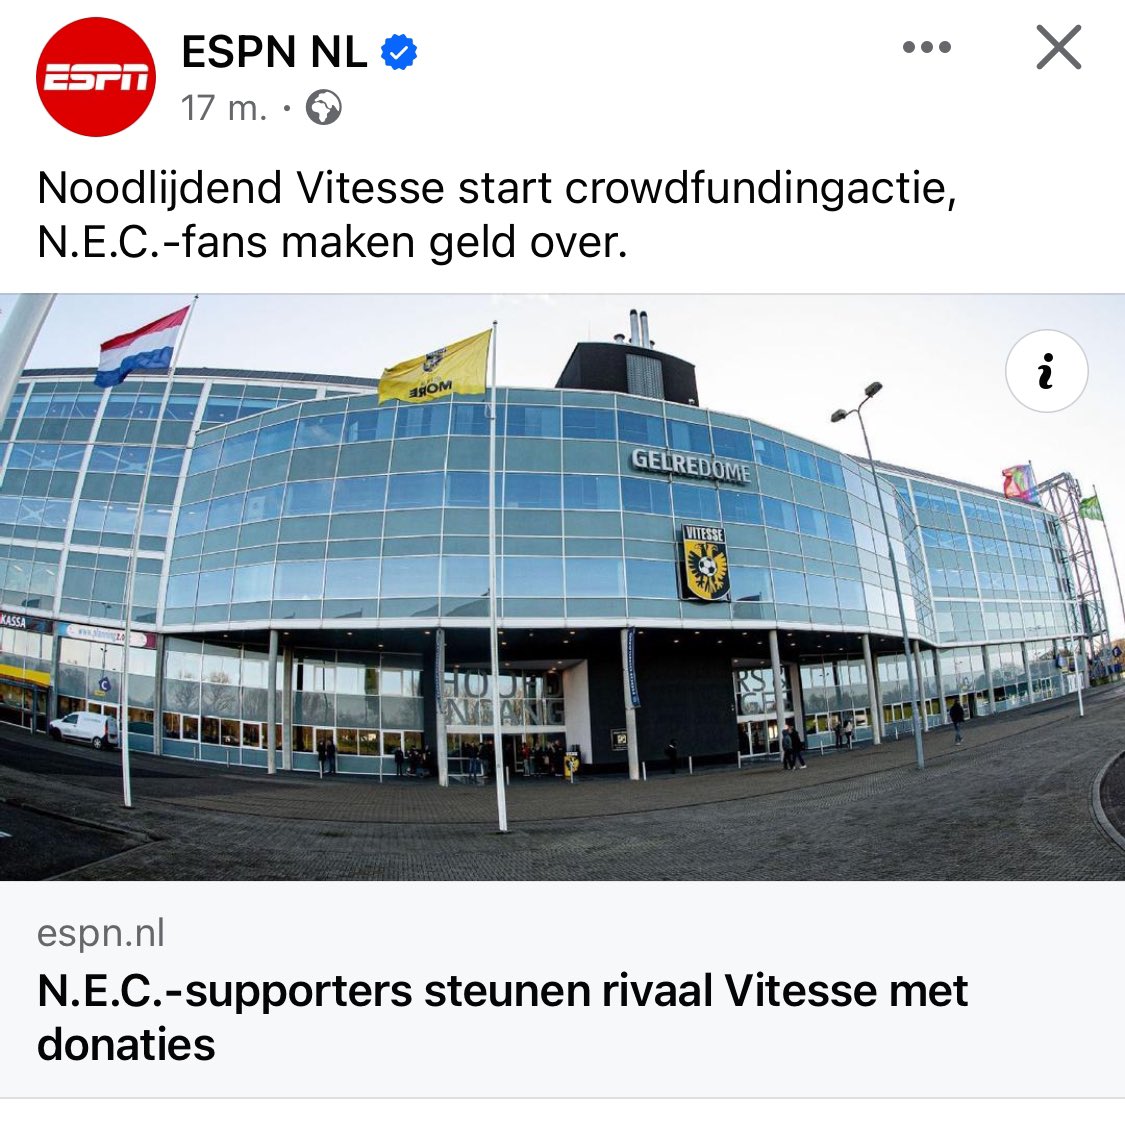 Voetbal is meer dan alleen rivaliteit, dat beseffen de #NEC fans ook, want zonder #Vitesse ook geen Gelderse derby’s meer. Wat een prachtig gebaar!